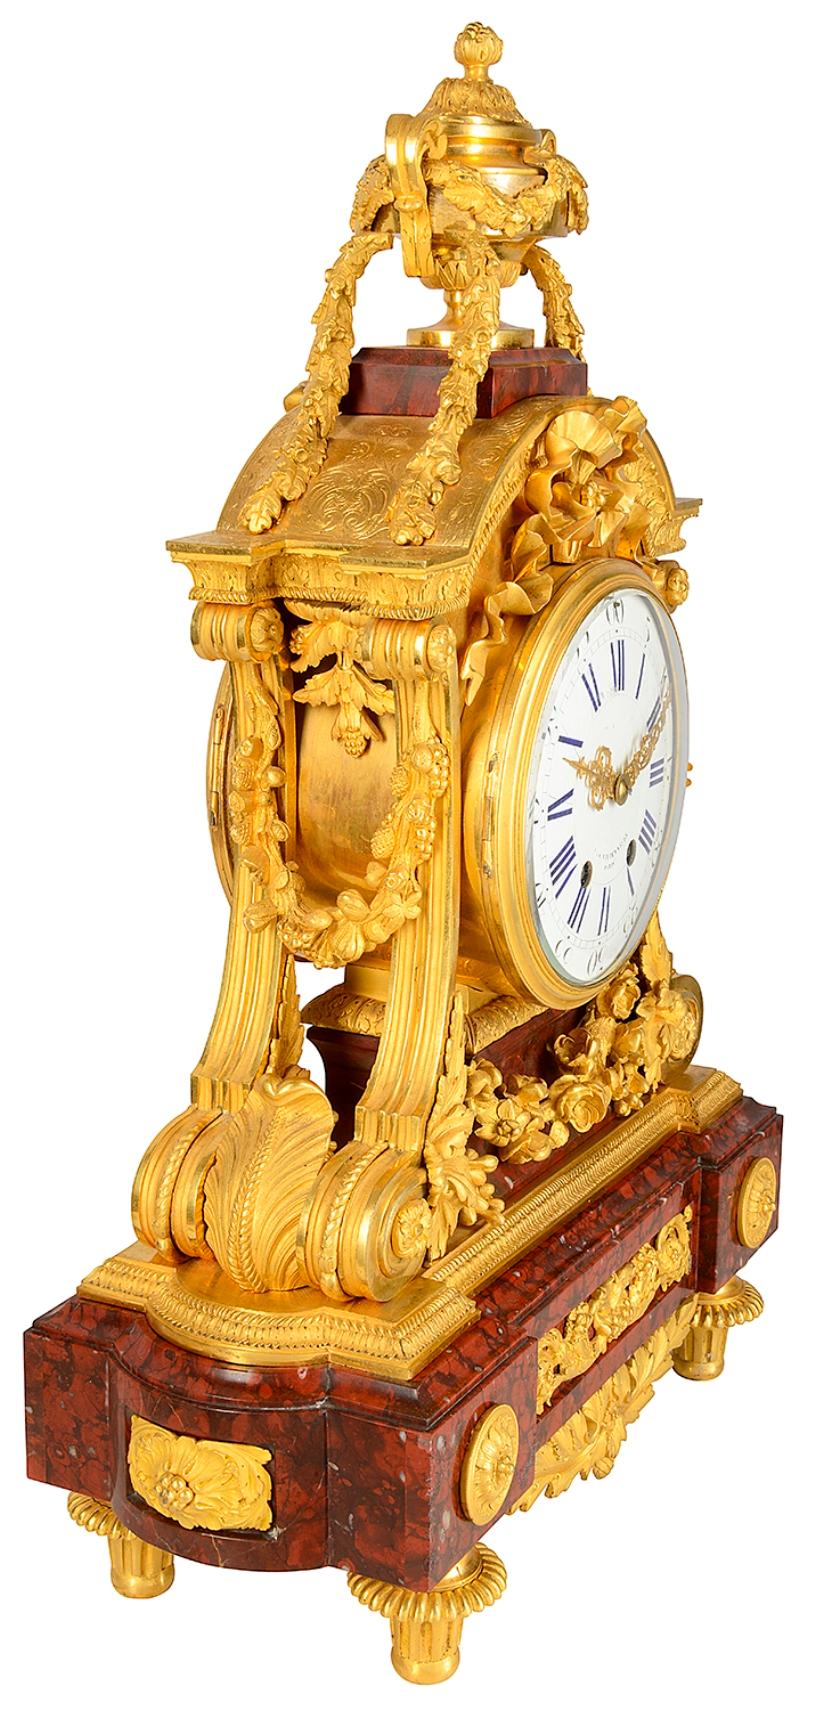 Pendule de cheminée de qualité en bronze doré et marbre Brèche, datant du XIXe siècle, avec une urne à deux poignées, des guirlandes de feuillage tombant sur un décor de rubans au-dessus de l'horloge en émail blanc avec des chiffres romains, qui